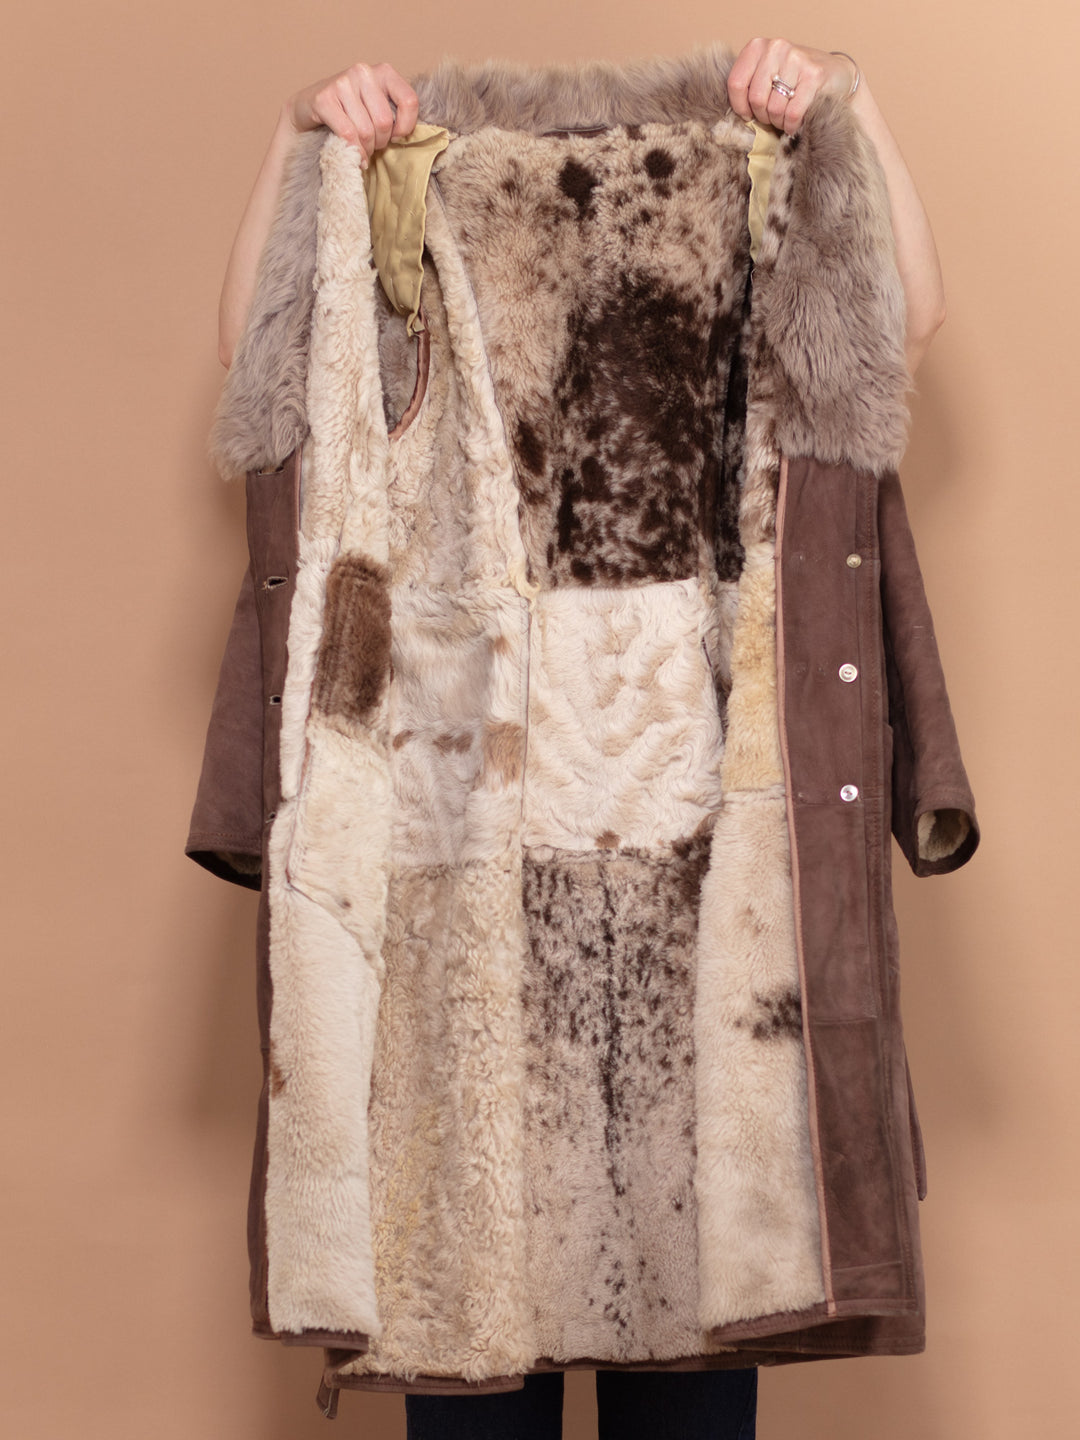 Penny Lane Sheepskin Coat 70s, Size L Large, Shearling Suede Coat, Boho Style Sheepskin Overcoat, Vintage Outerwear, Sustainable Clothing